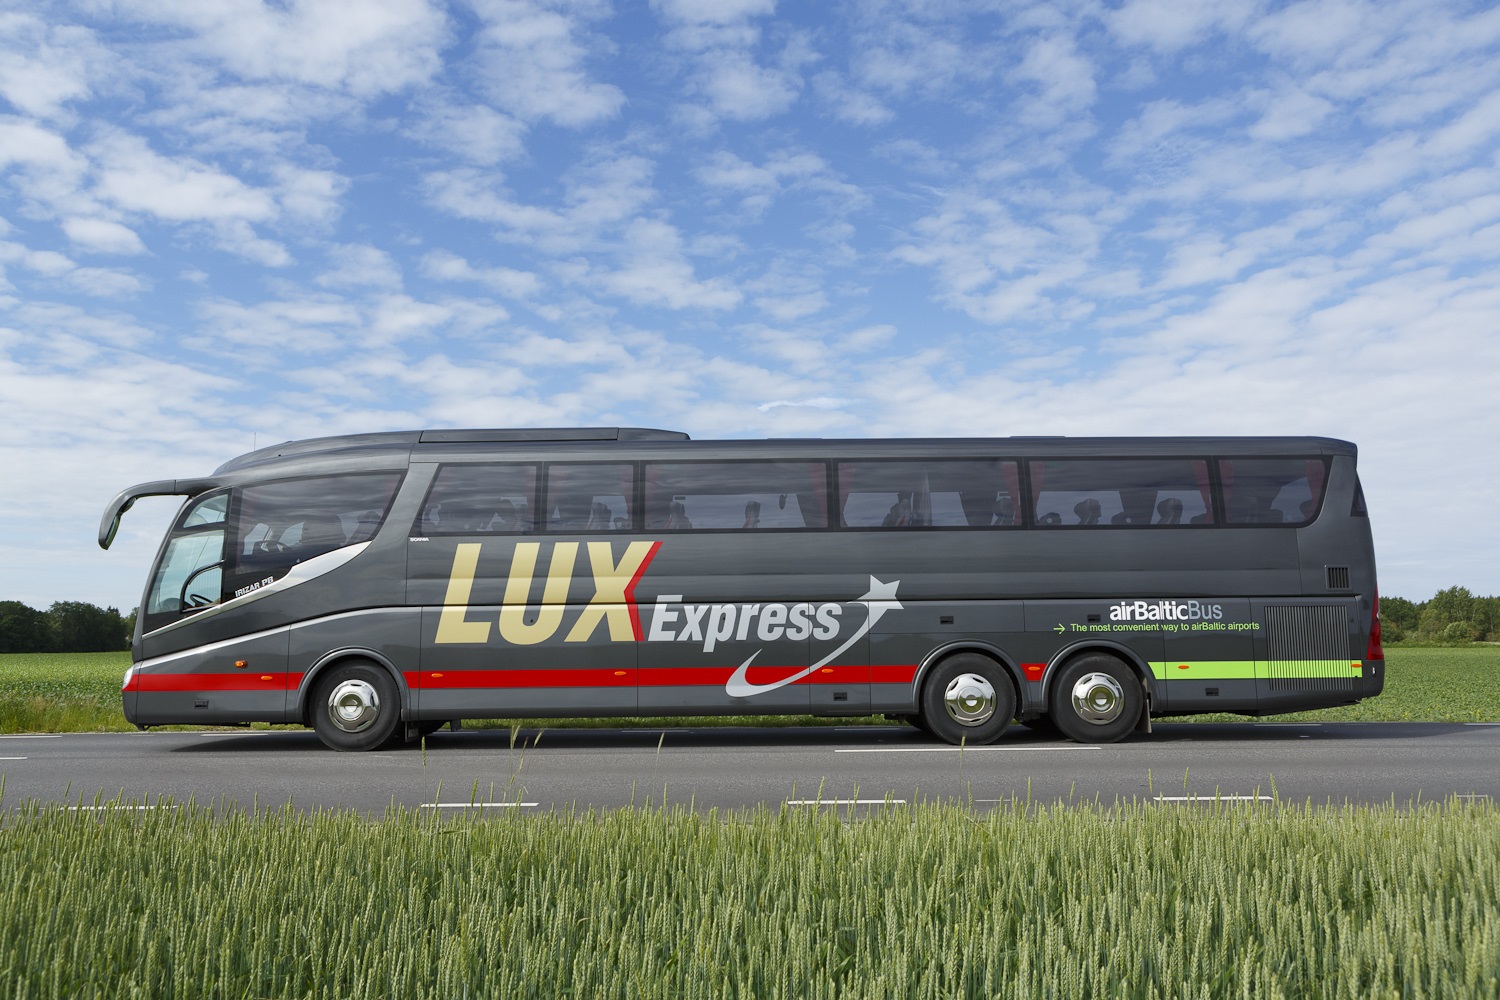 Tańsze przejazdy Lux Express – do 50% rabatu na podróże!